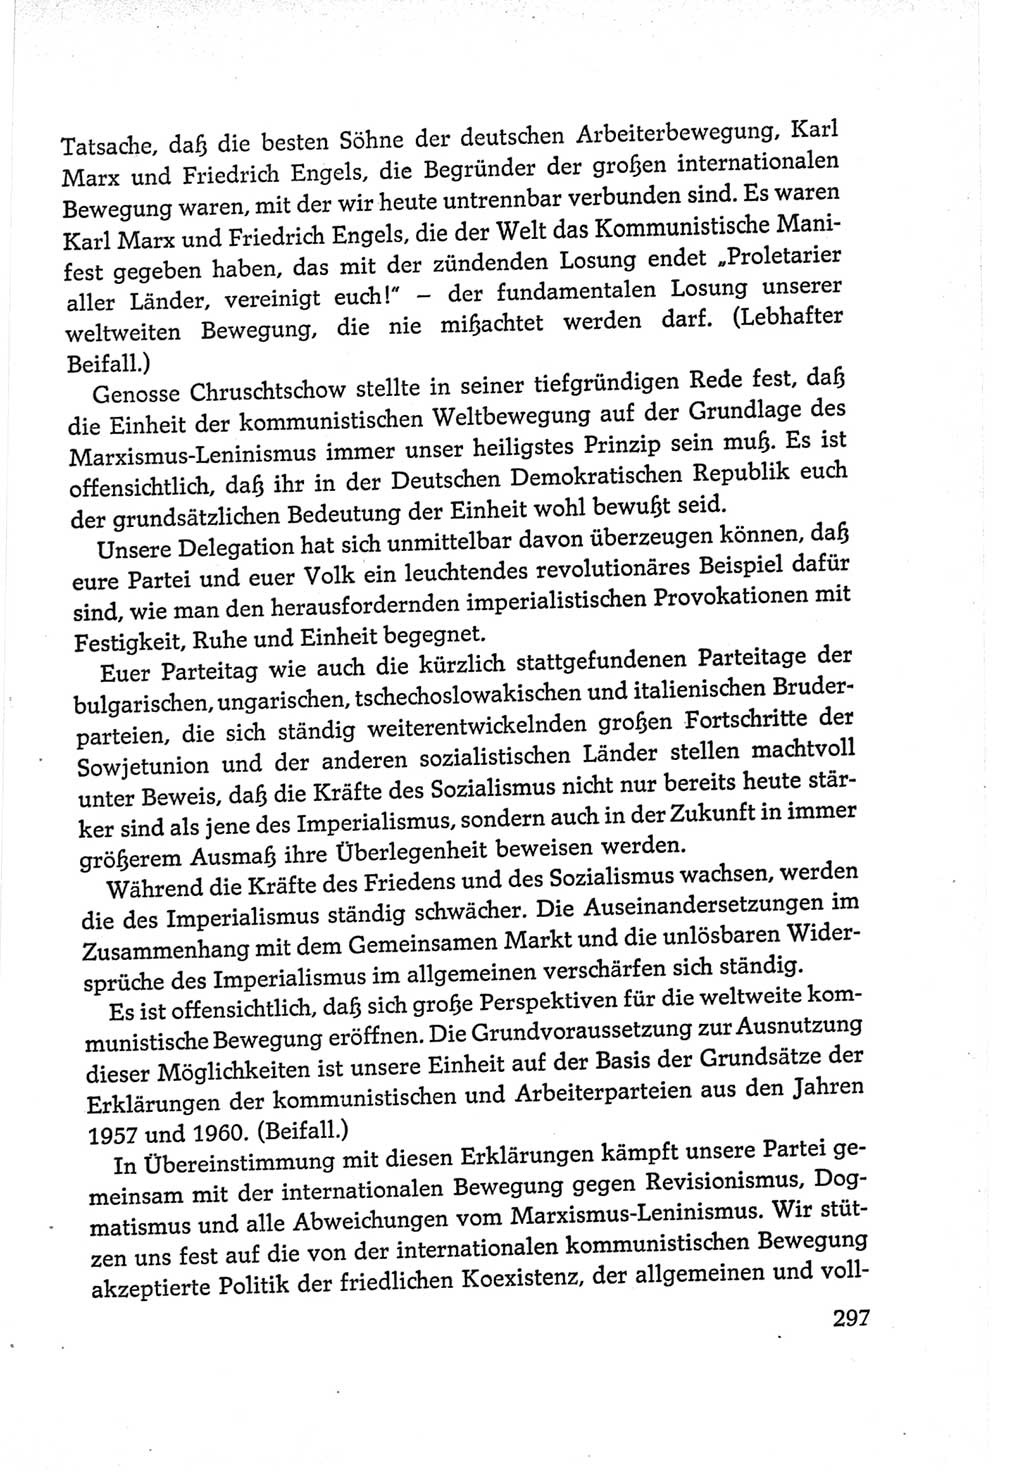 Protokoll der Verhandlungen des Ⅵ. Parteitages der Sozialistischen Einheitspartei Deutschlands (SED) [Deutsche Demokratische Republik (DDR)] 1963, Band Ⅱ, Seite 297 (Prot. Verh. Ⅵ. PT SED DDR 1963, Bd. Ⅱ, S. 297)